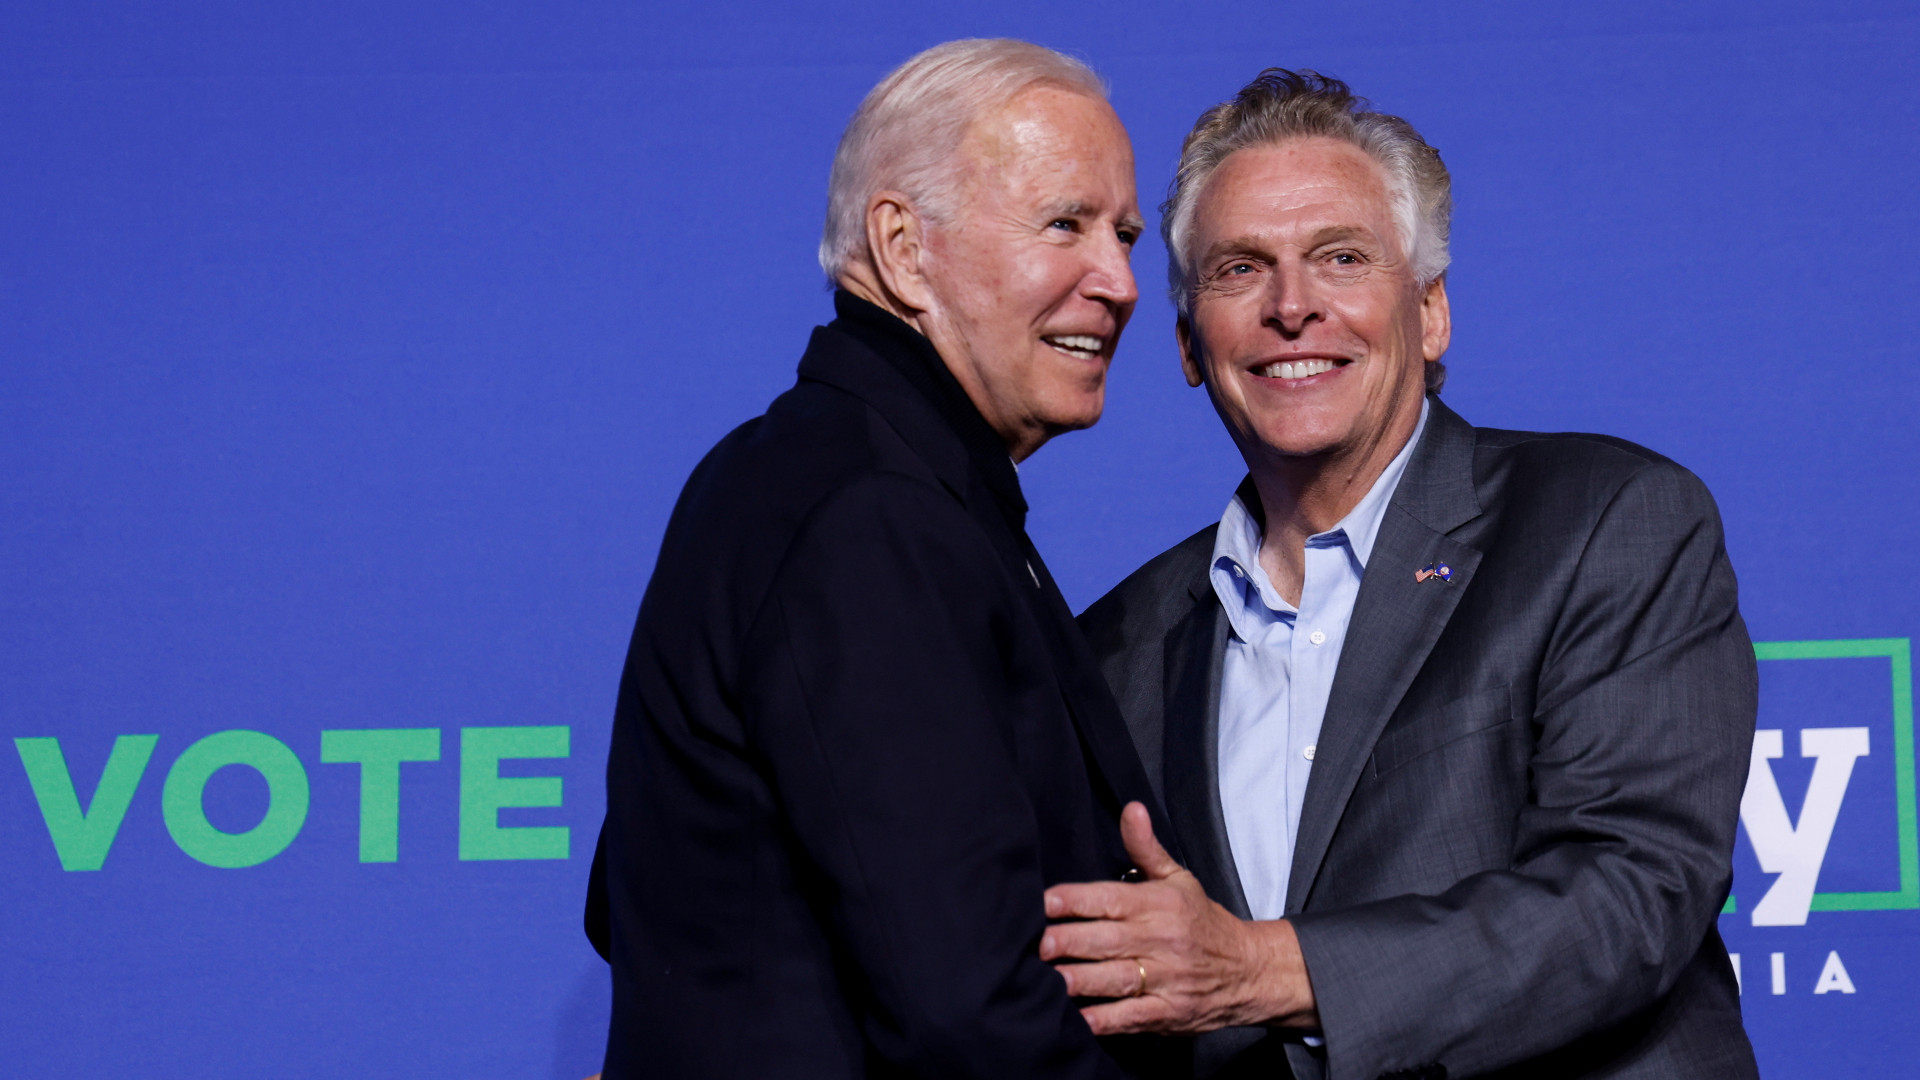 US-Präsident Joe Biden und der abgewählte Gouverneur von Virginia, Terry McAuliffe, auf einer gemeinsamen Wahlkampfveranstaltung. | REUTERS